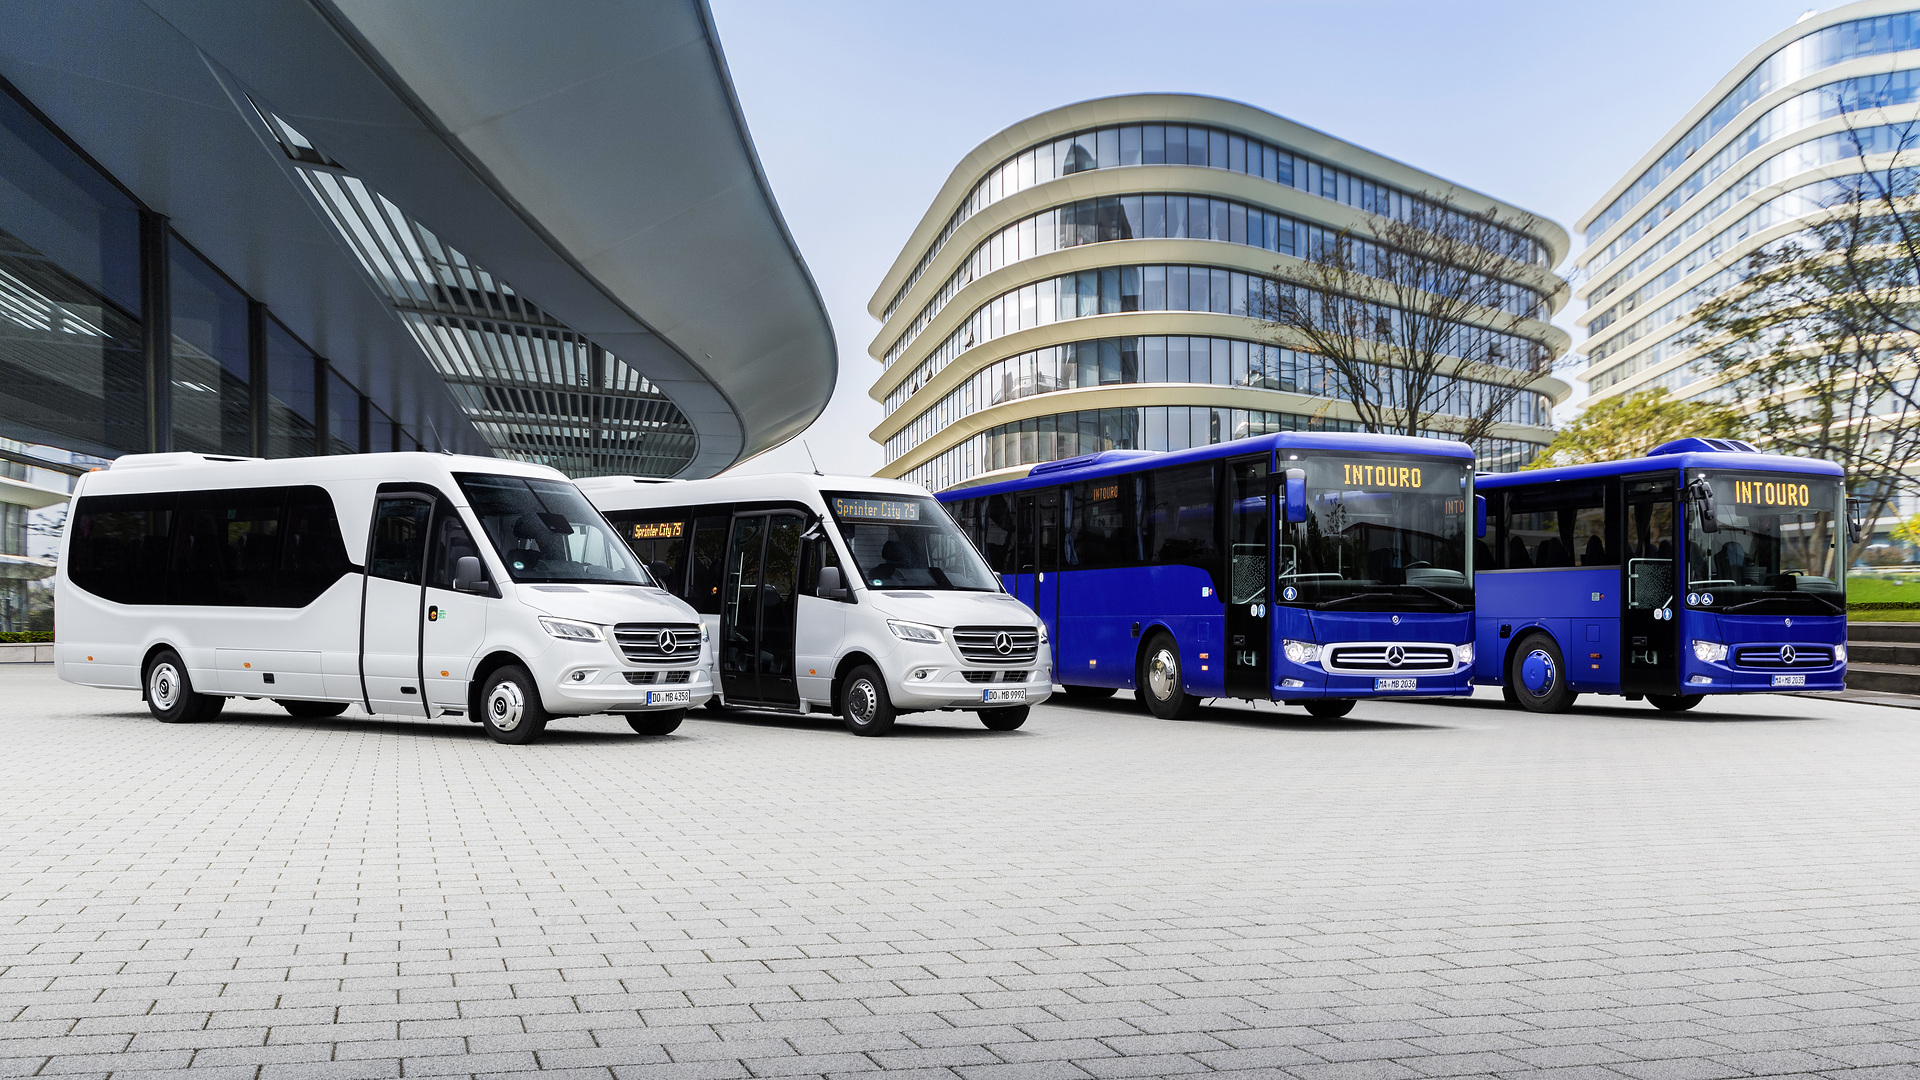 Rekordauftrag aus Portugal: Daimler Buses hat 864 Omnibusse an die Área Metropolitana de Lisboa (AML) geliefert, die Region um die Hauptstadt Lissabon